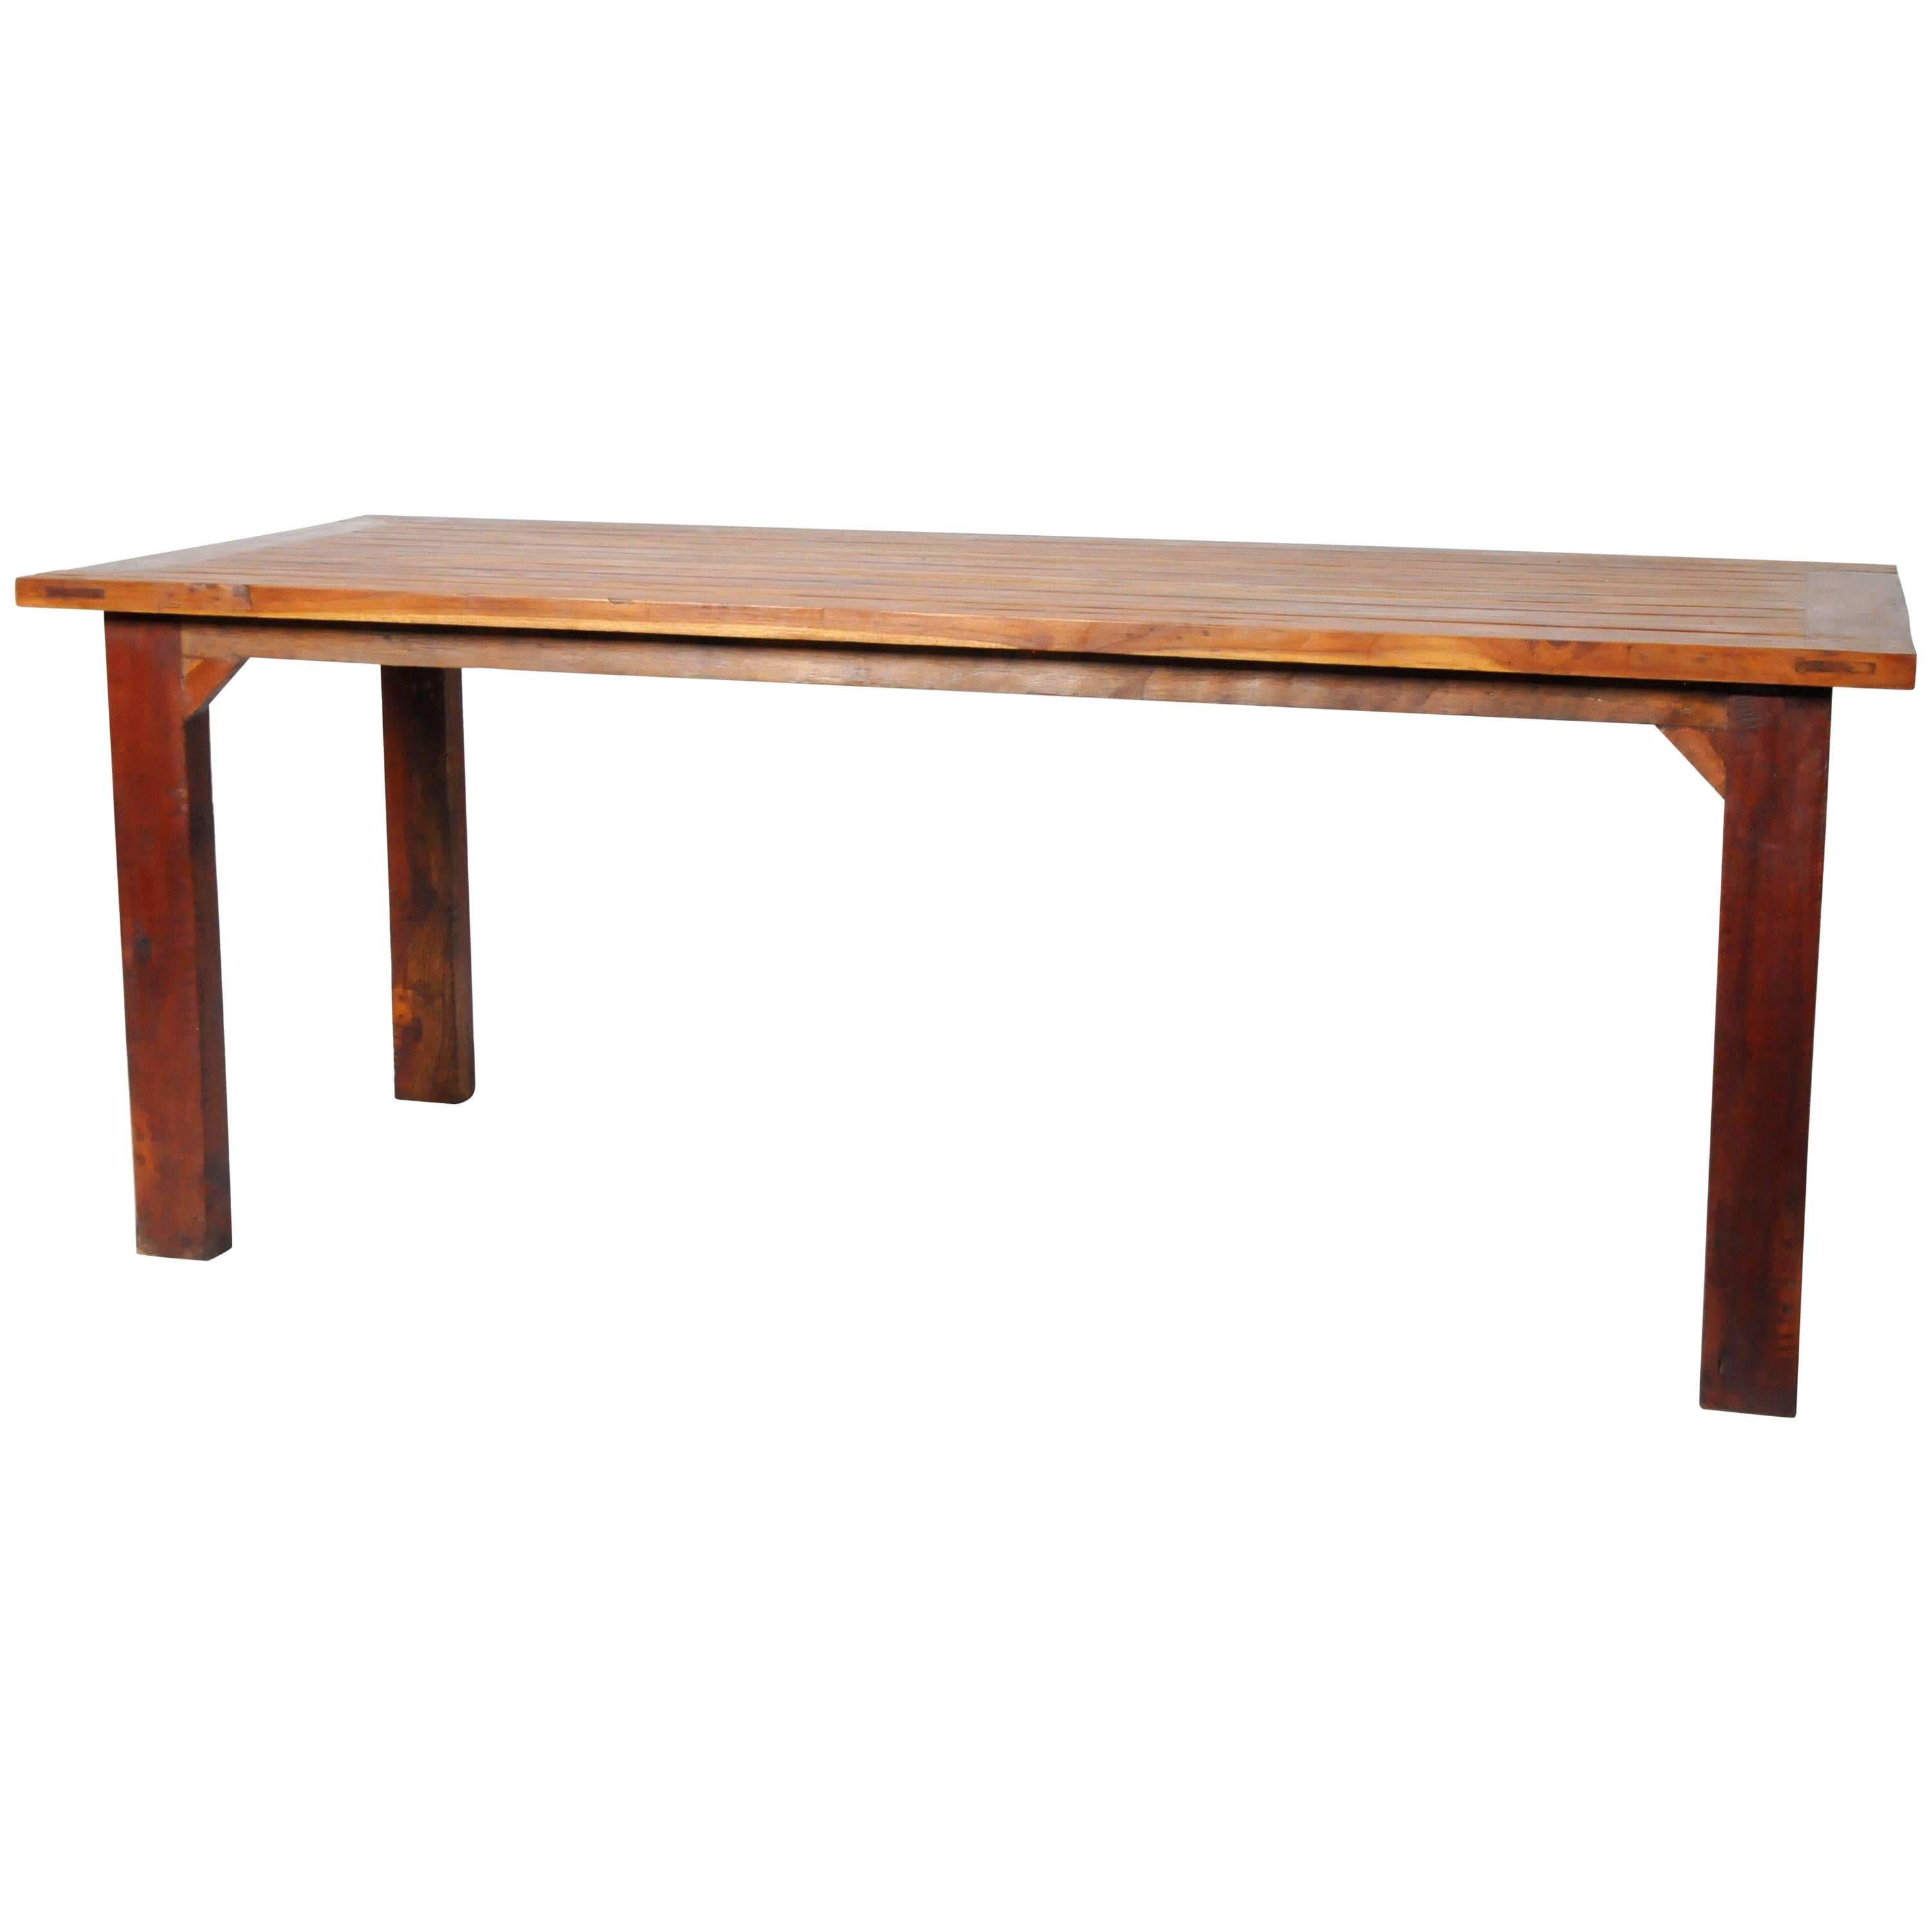 Reclaimed Teak Wood Table